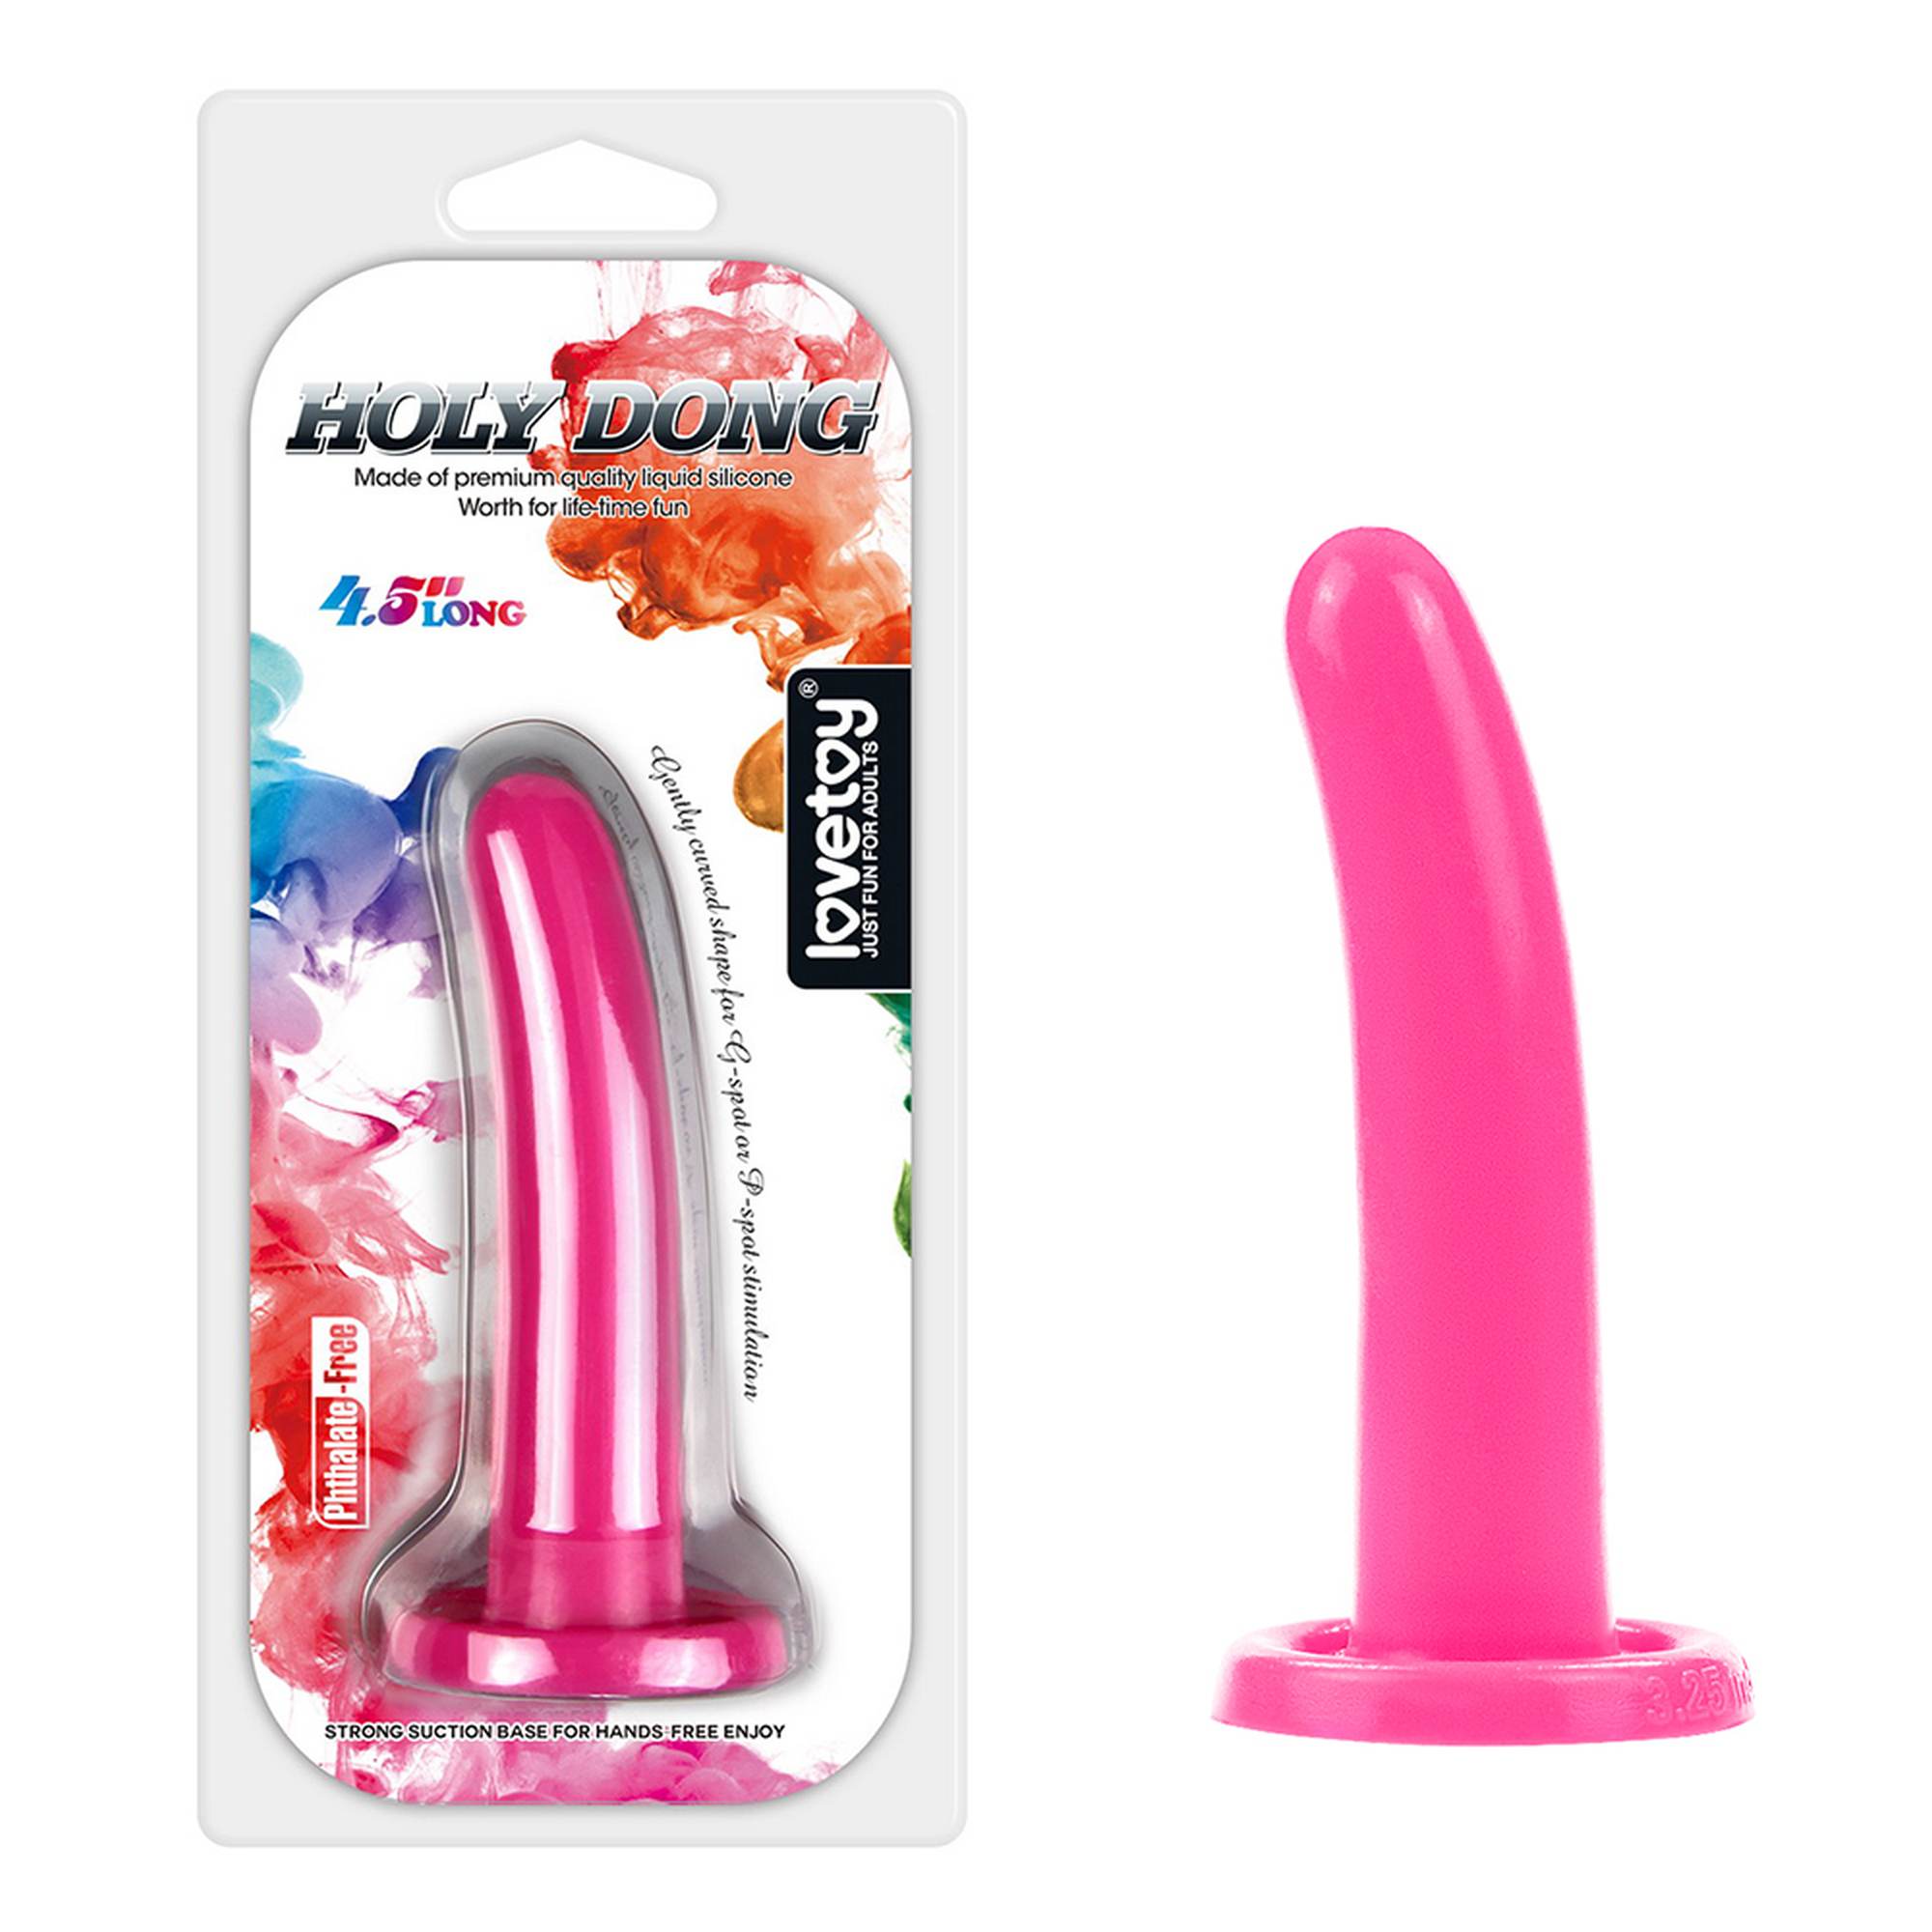 Silicone Holy Dong Small Pink - Dildo analne z przyssawką strap-on zabawka do penetracji analnej